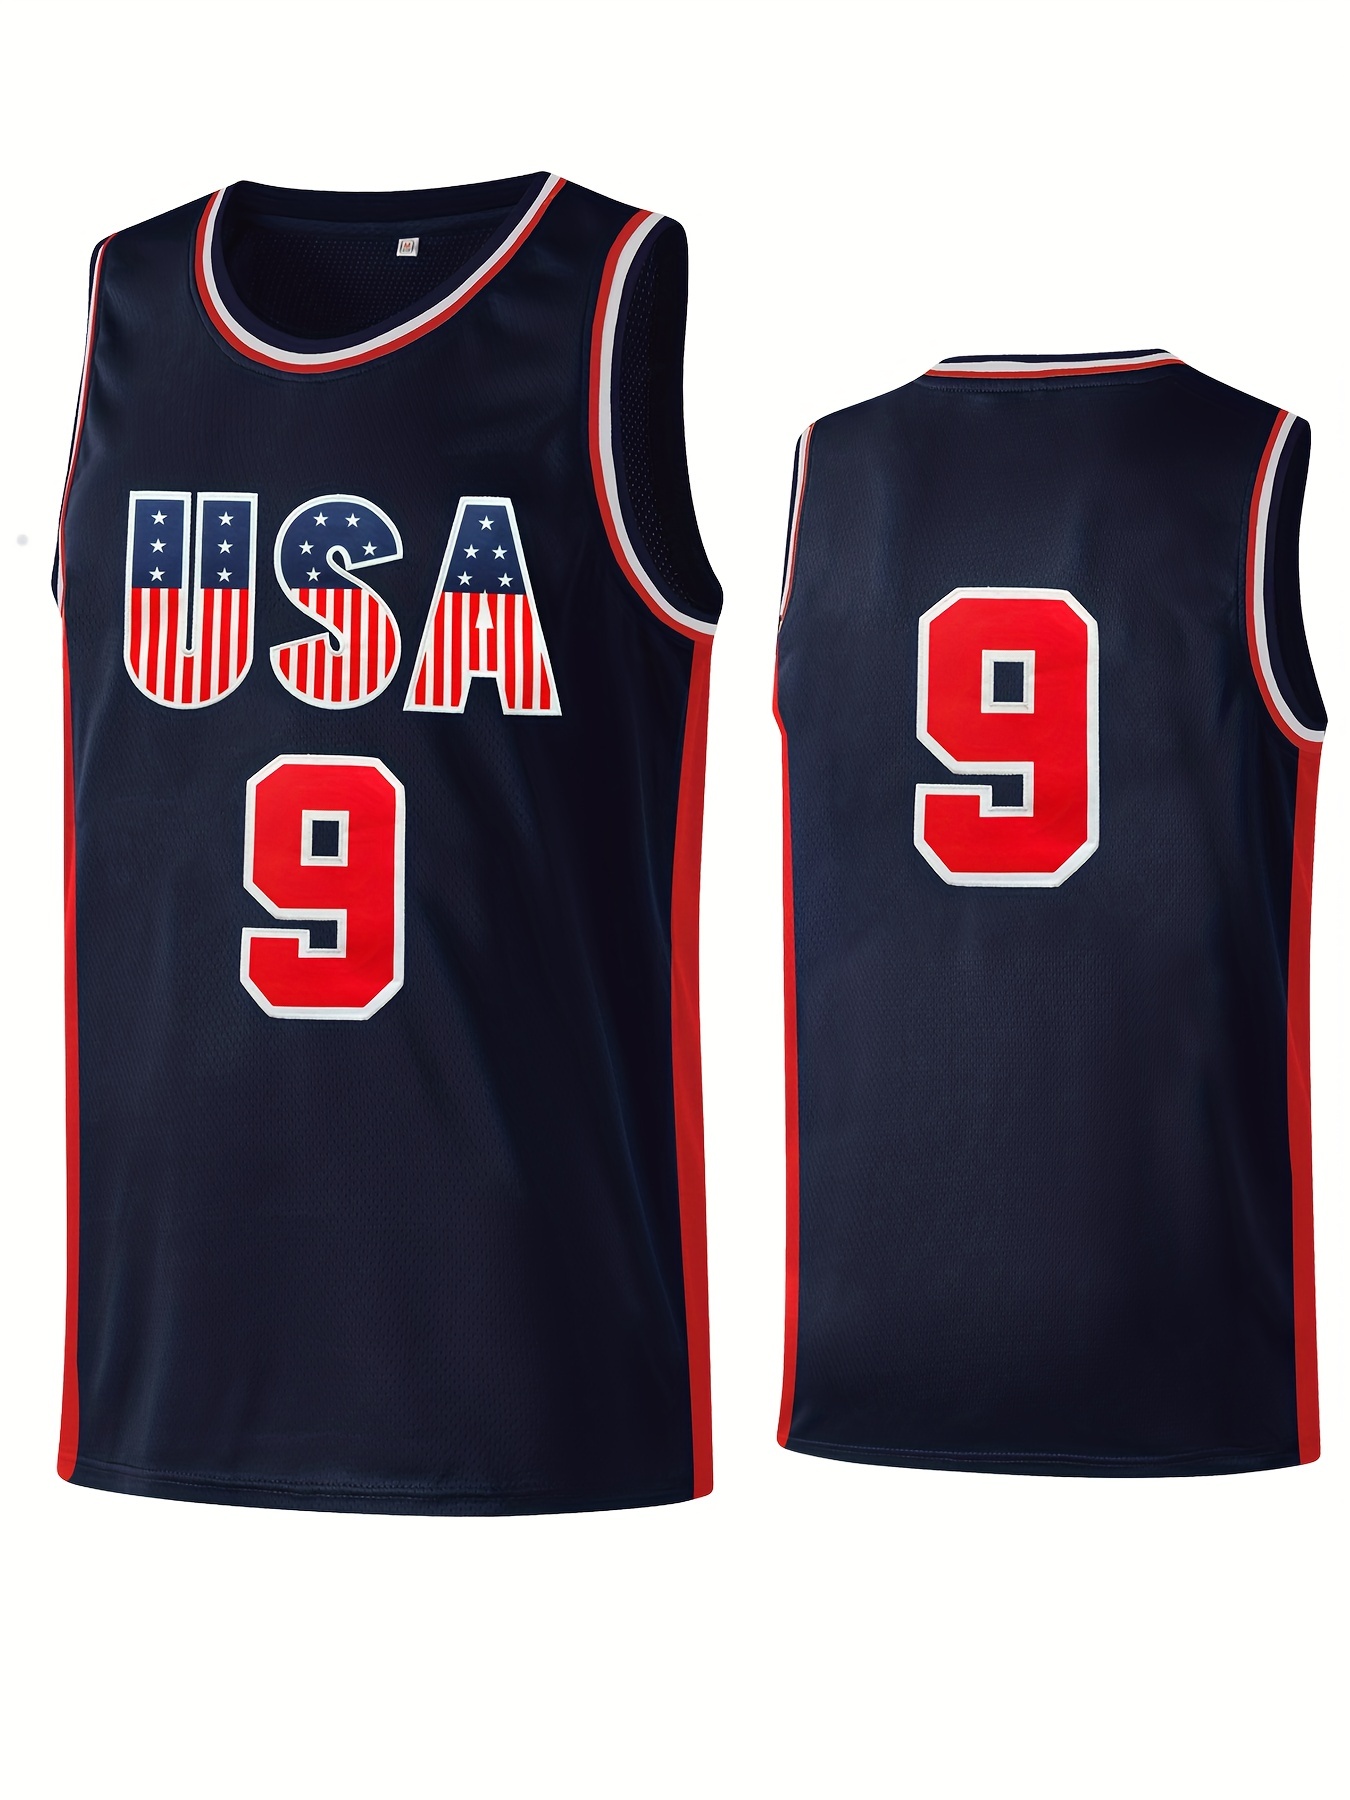 Black Mamba Basketball Jersey 8# Front 24# Back Bryant Usa Size All  Stitched - AliExpress